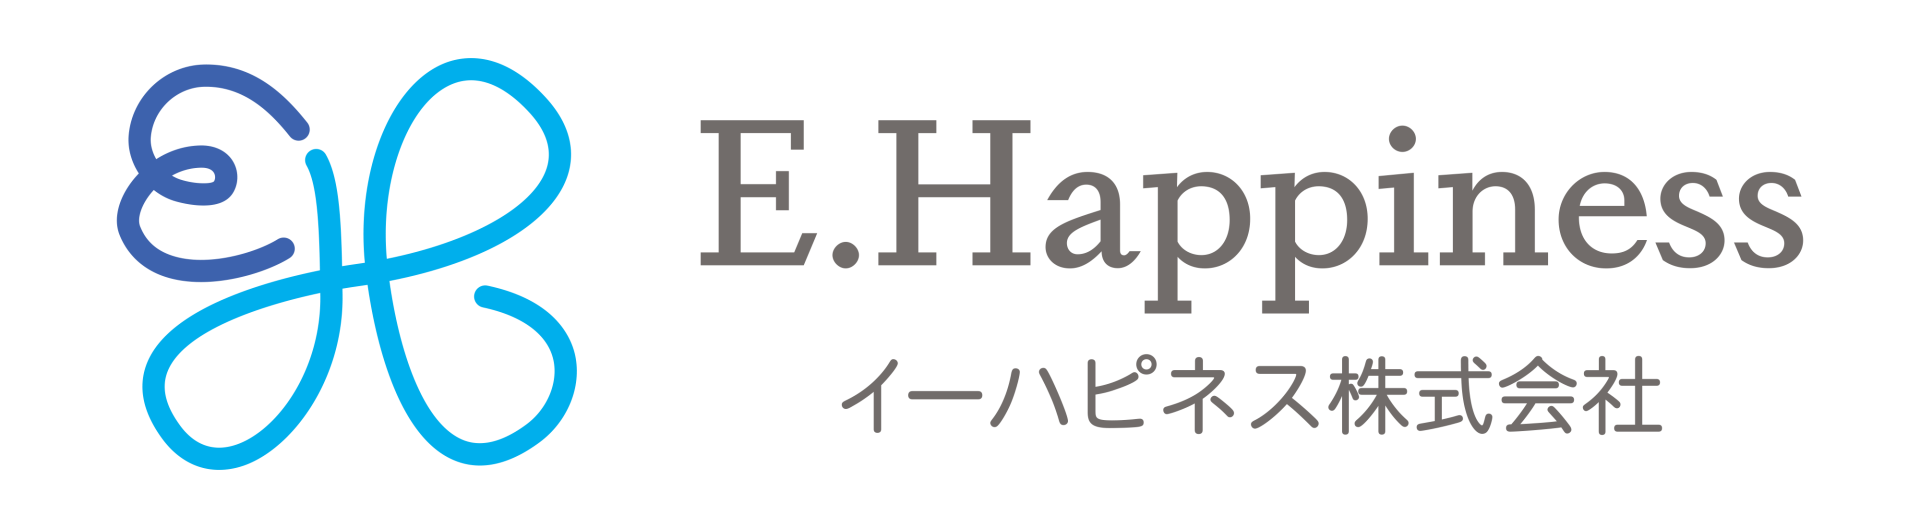 幸せの語源 イーハピネス株式会社 E Happiness Inc